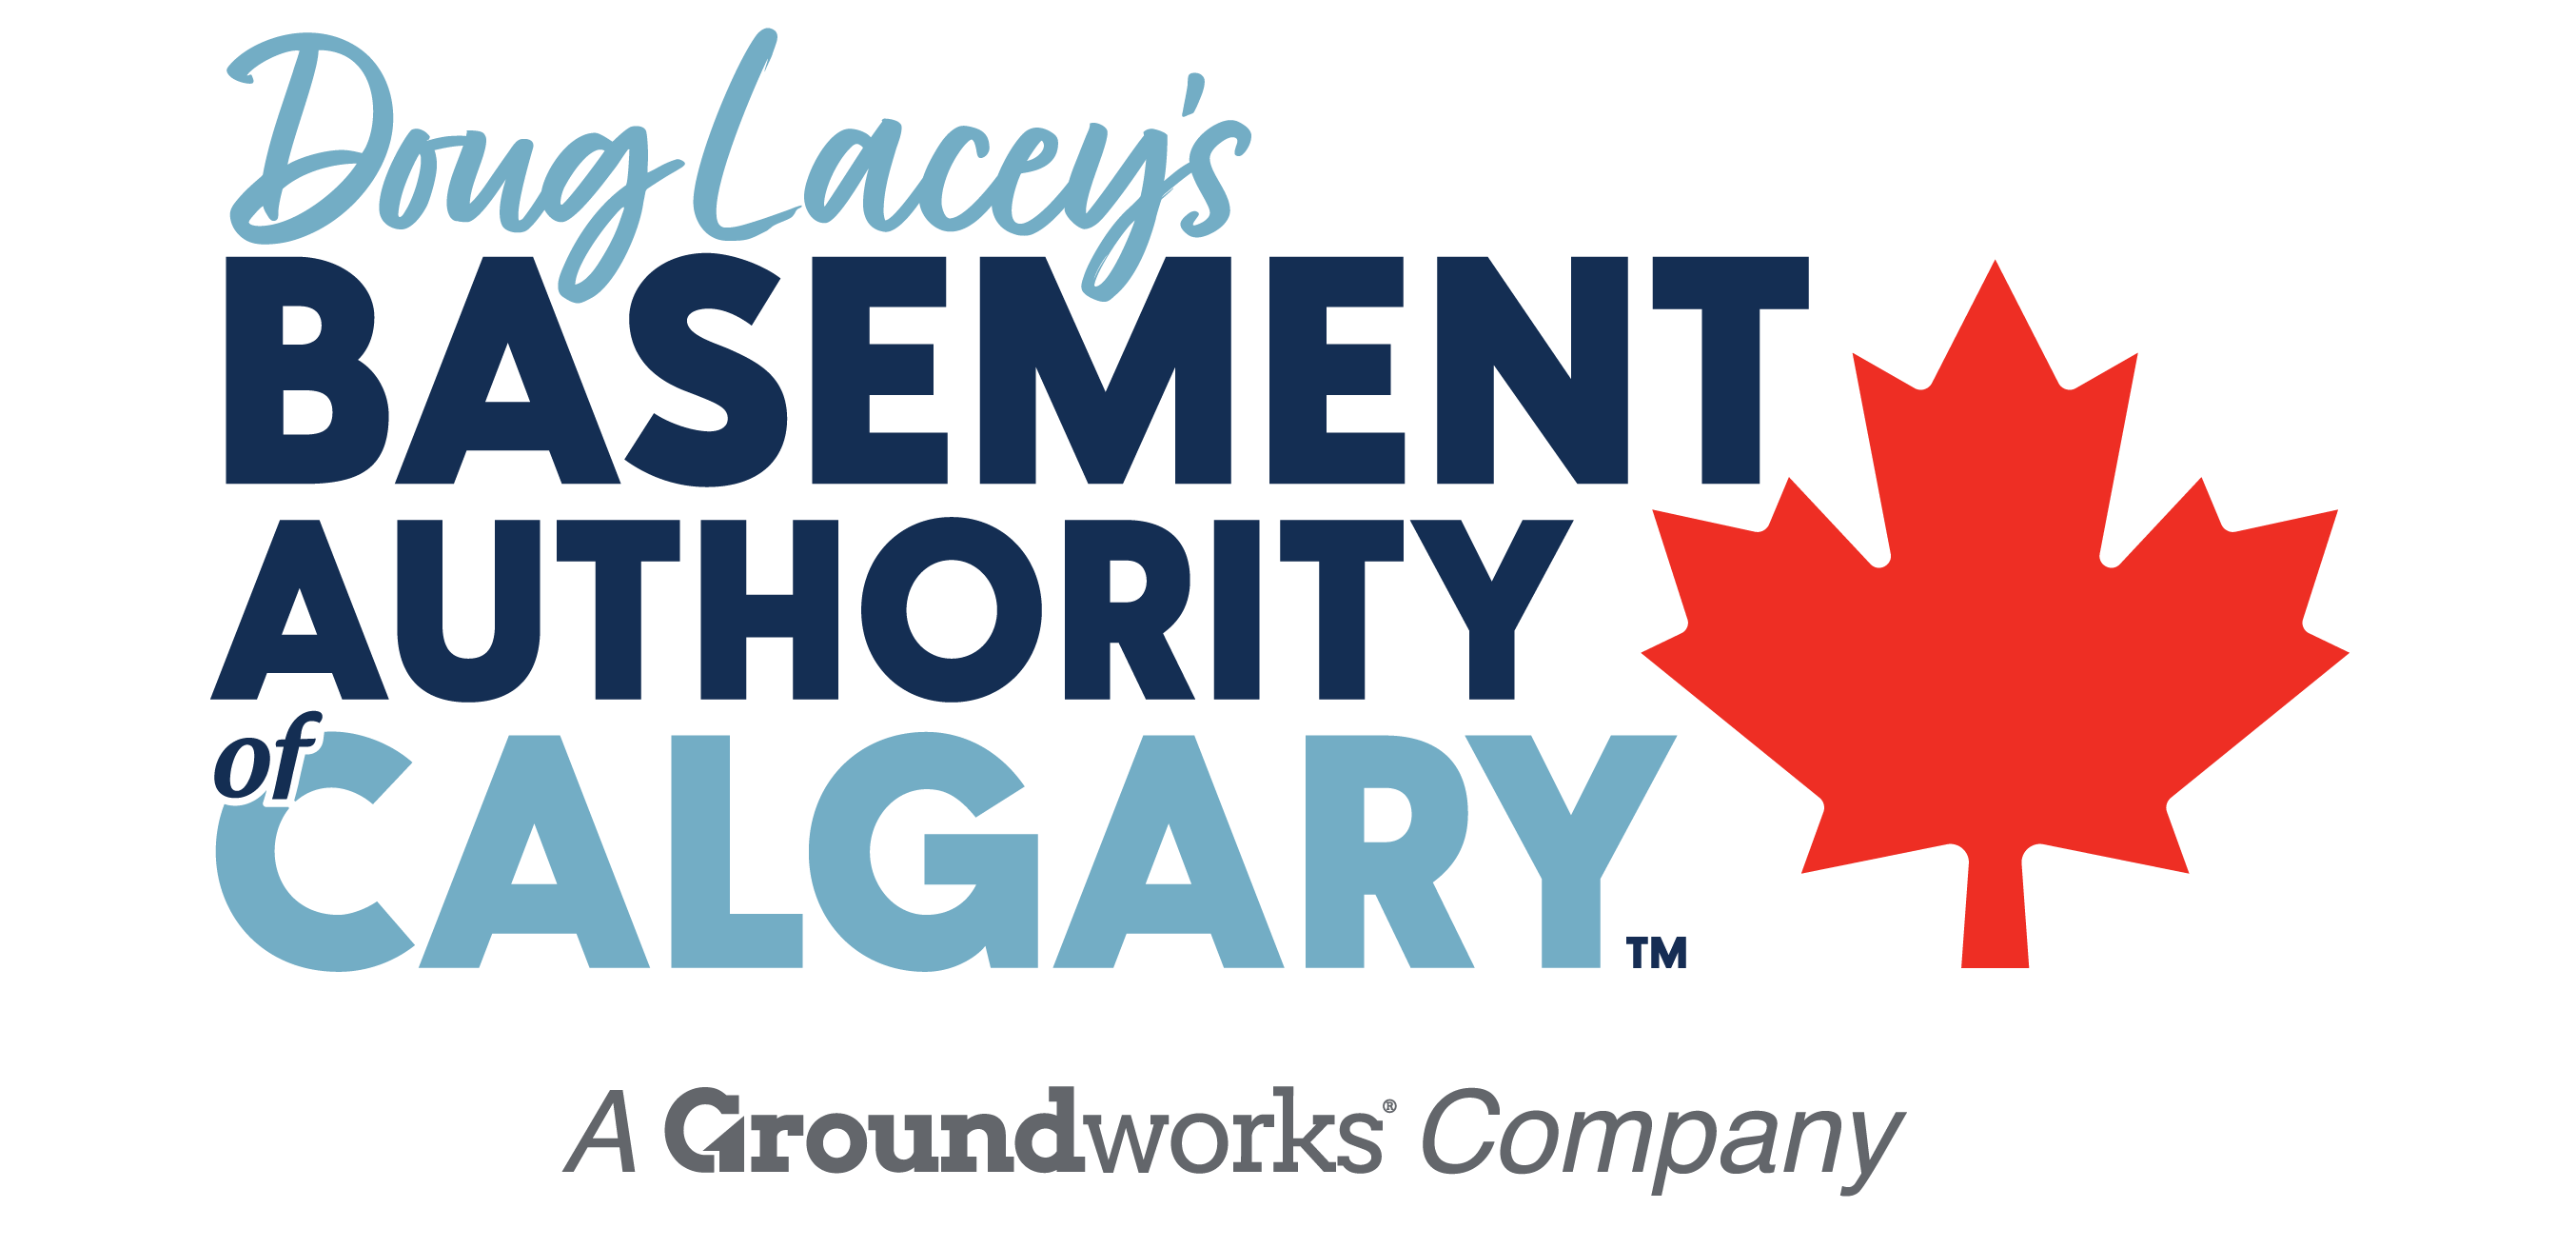 Basement Authority of Calgary